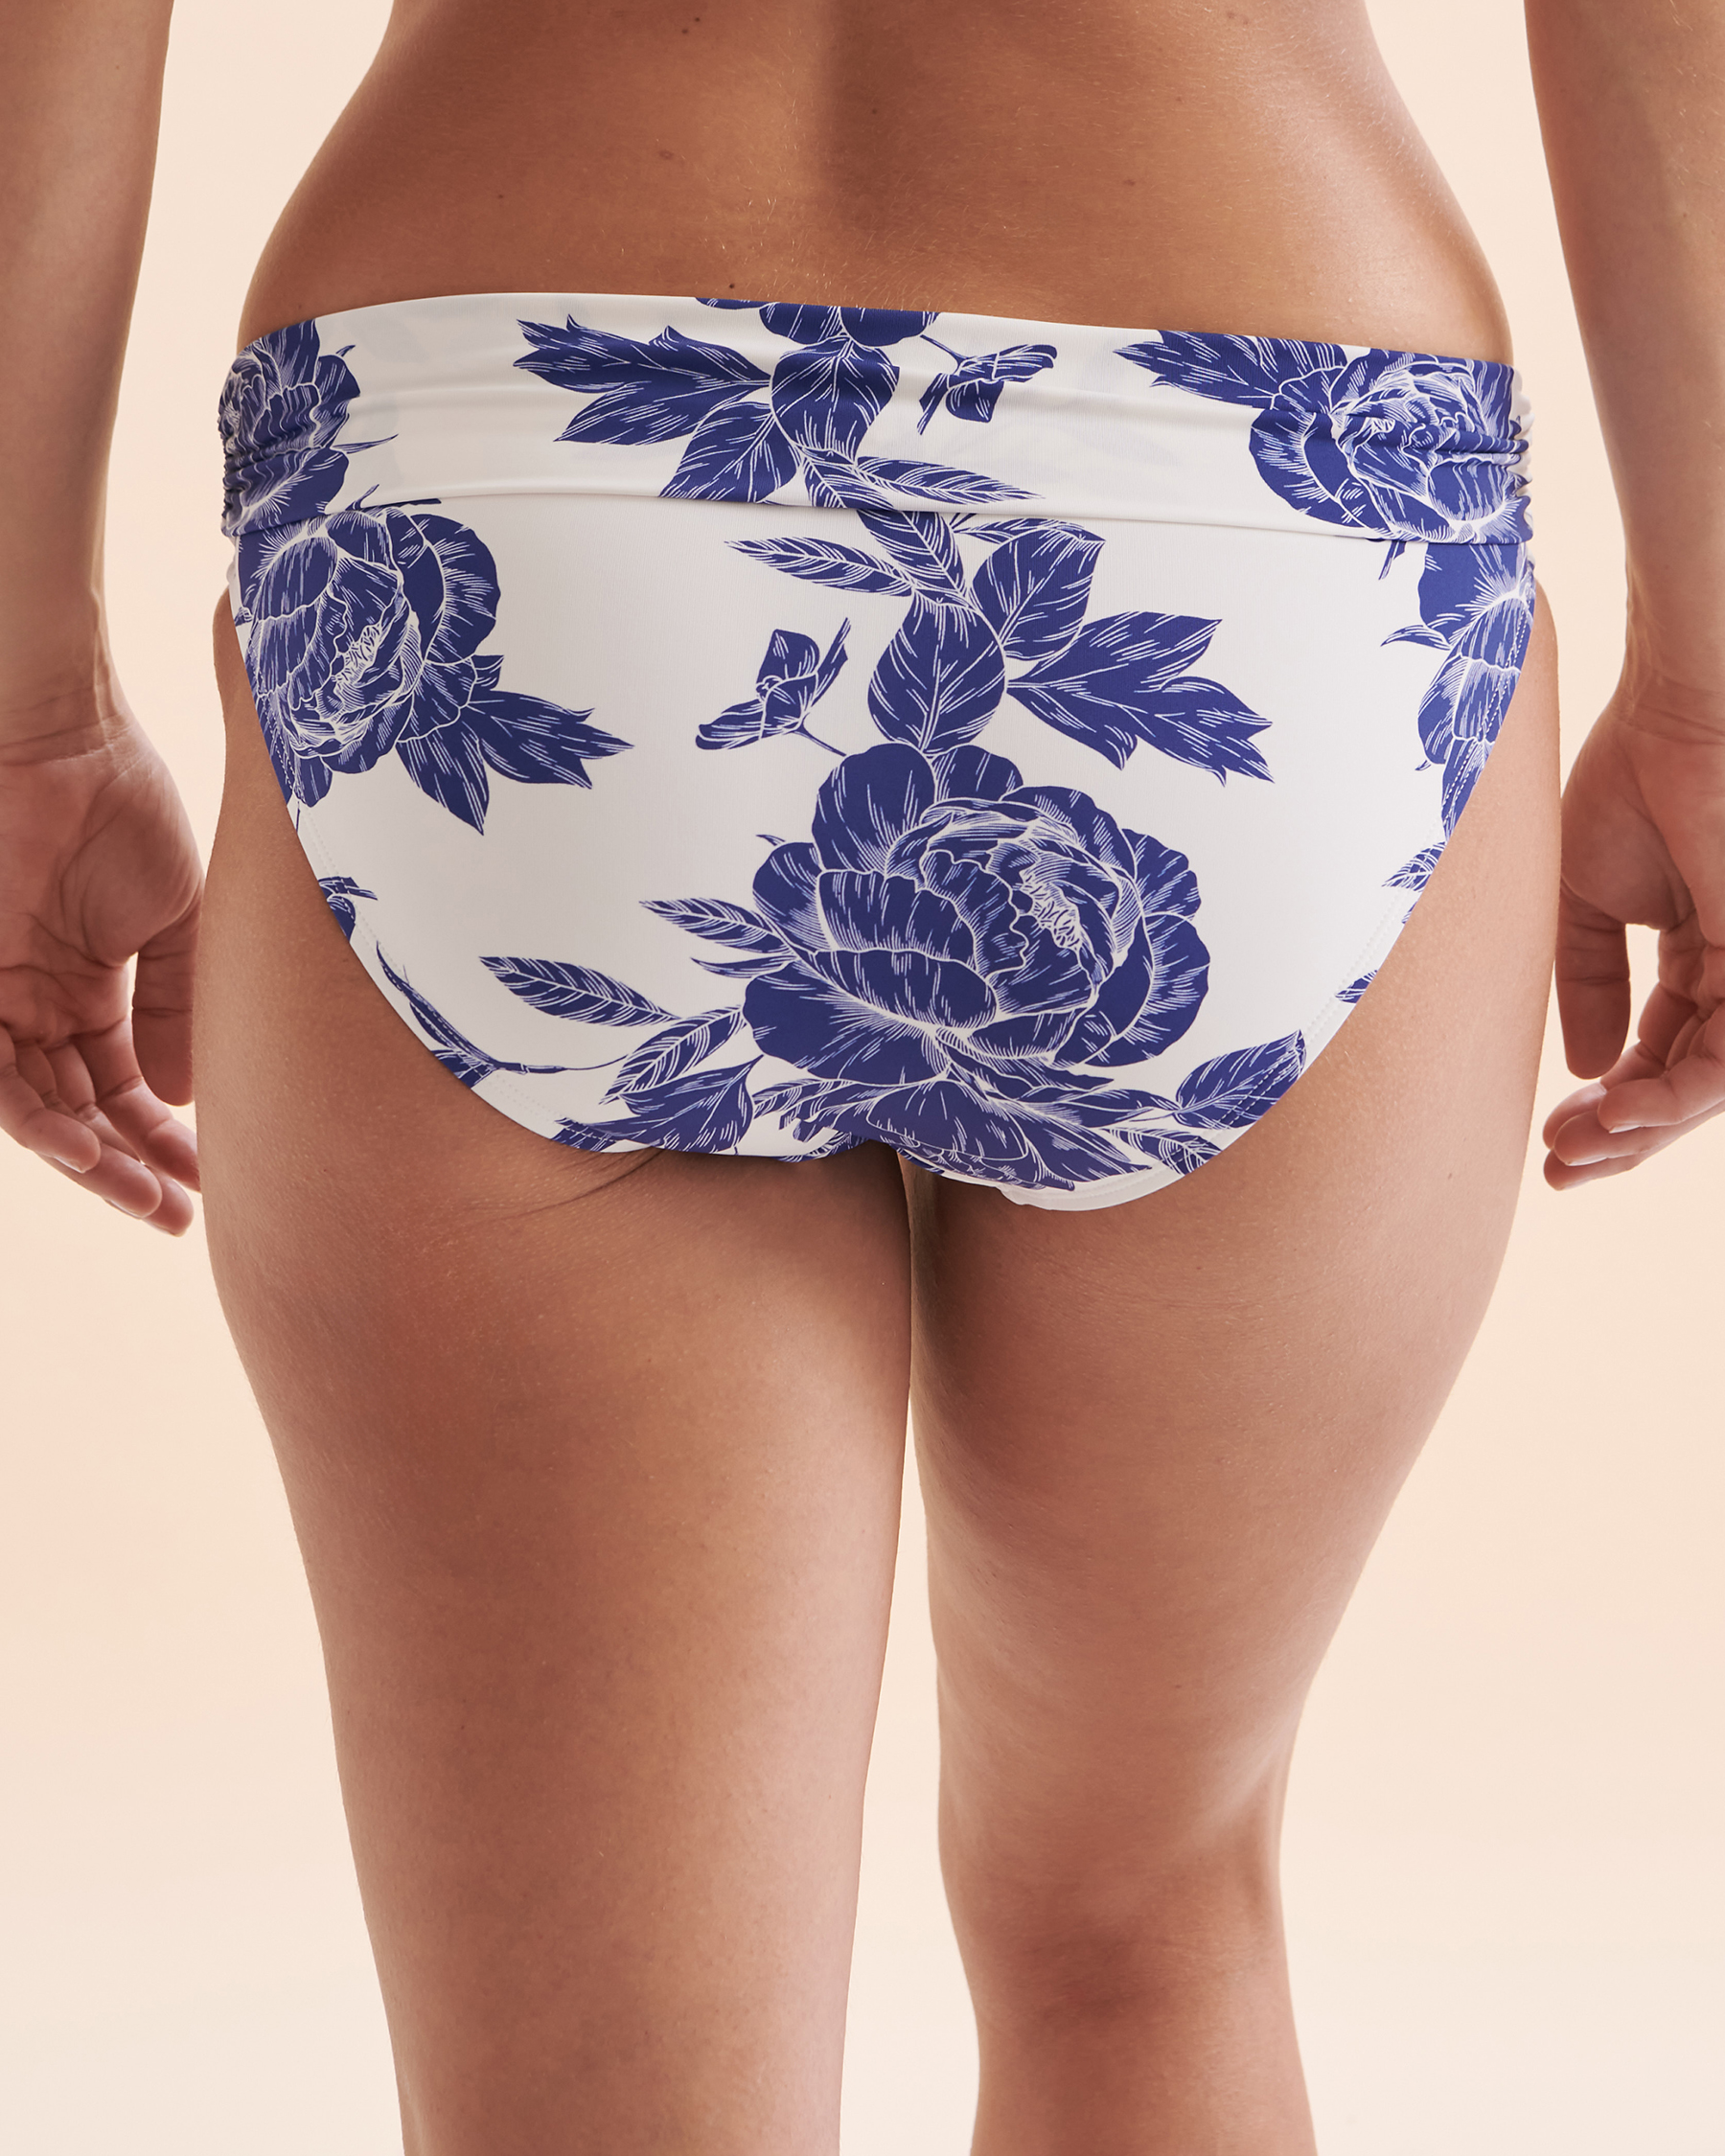 TURQUOISE COUTURE Bas de bikini bande de taille pliée Floral Fleurs bleues et blanches 01300271 - Voir6